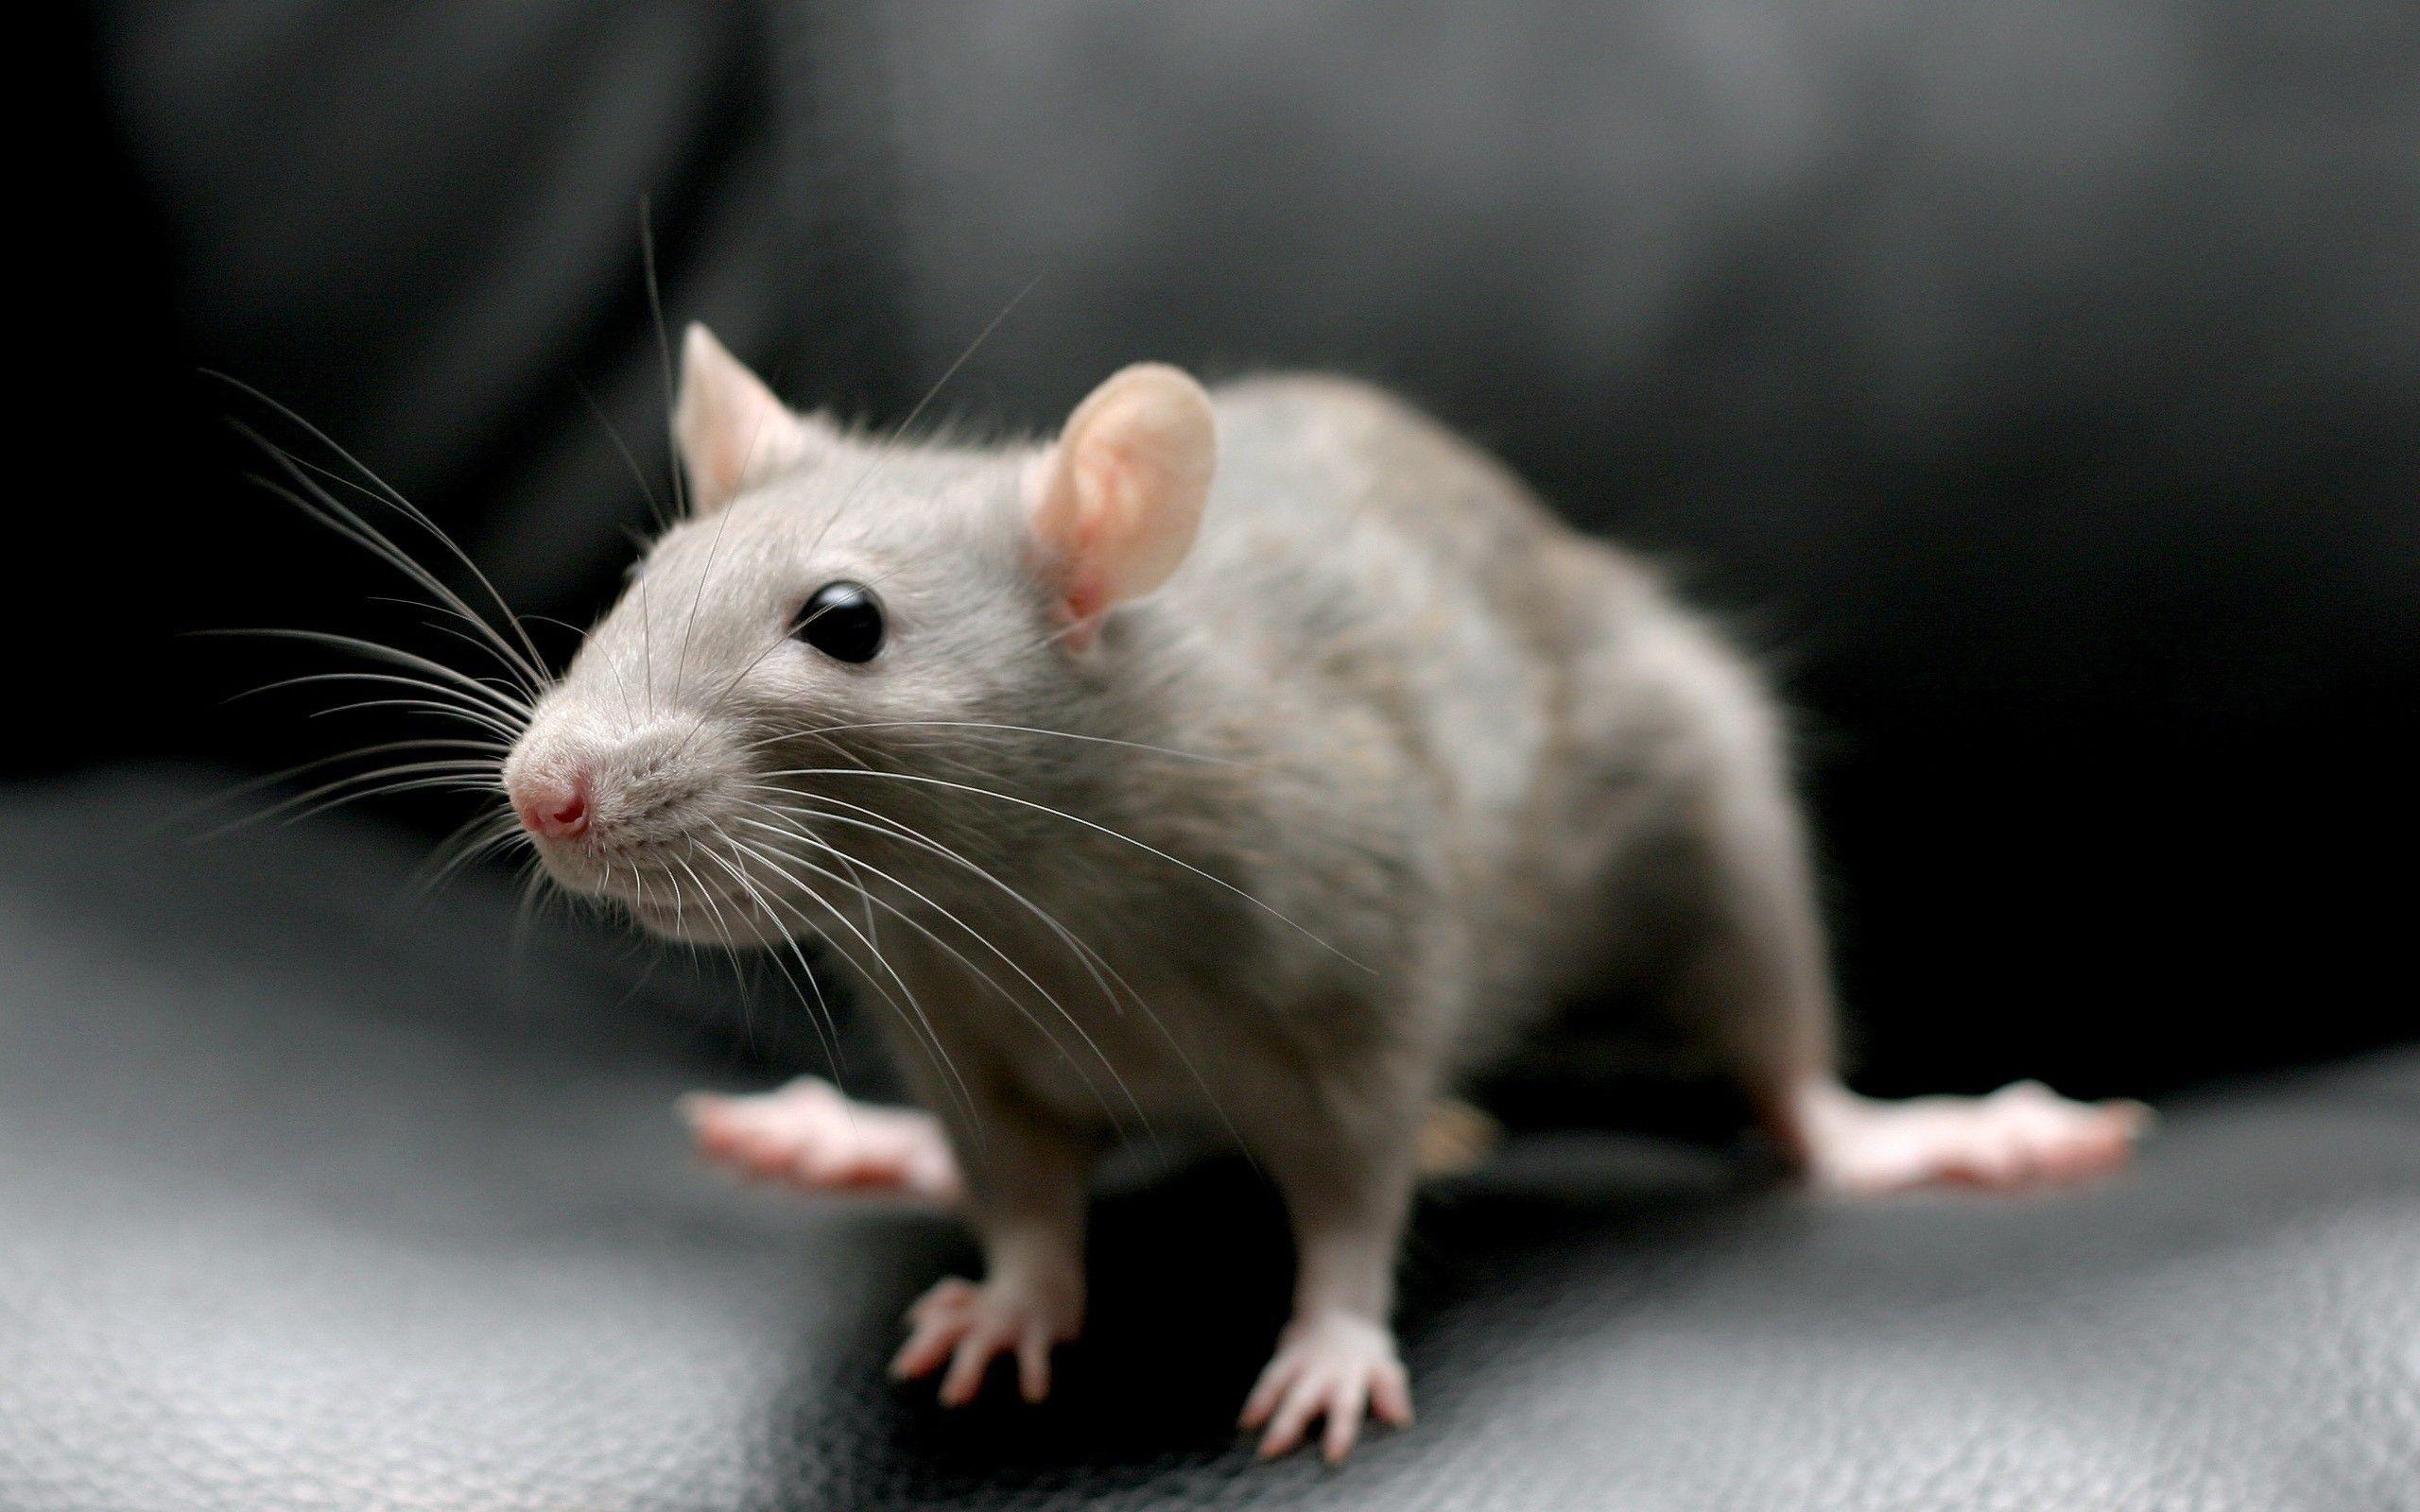 Animals rats mammals rodent wallpaper. PC